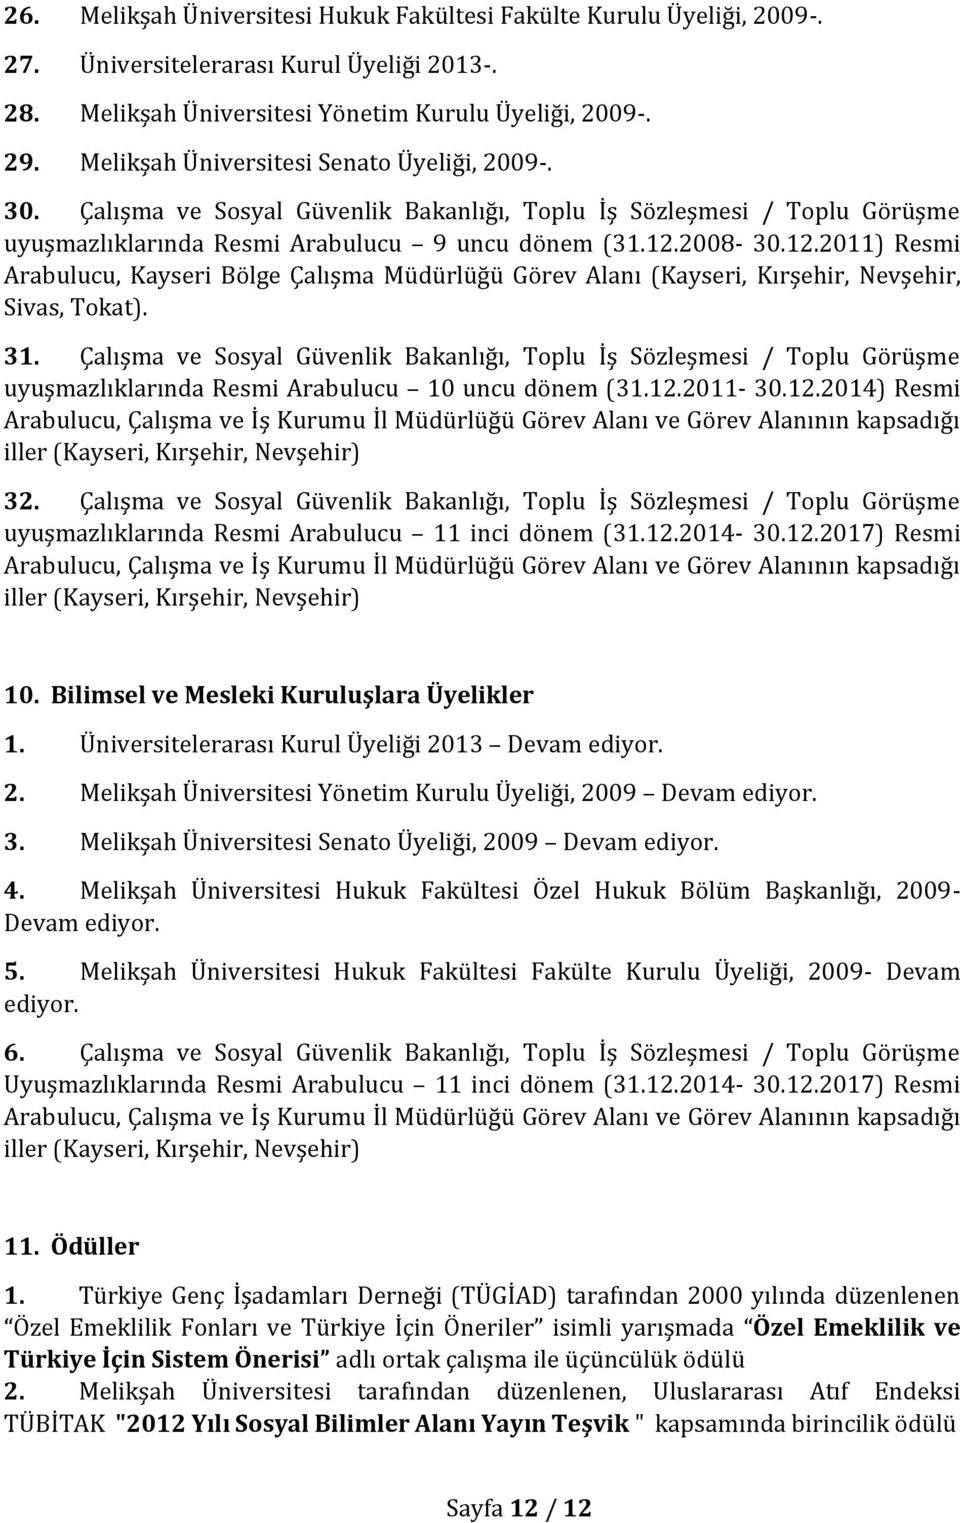 2008-30.12.2011) Resmi Arabulucu, Kayseri Bölge Çalışma Müdürlüğü Görev Alanı (Kayseri, Kırşehir, Nevşehir, Sivas, Tokat). 31.